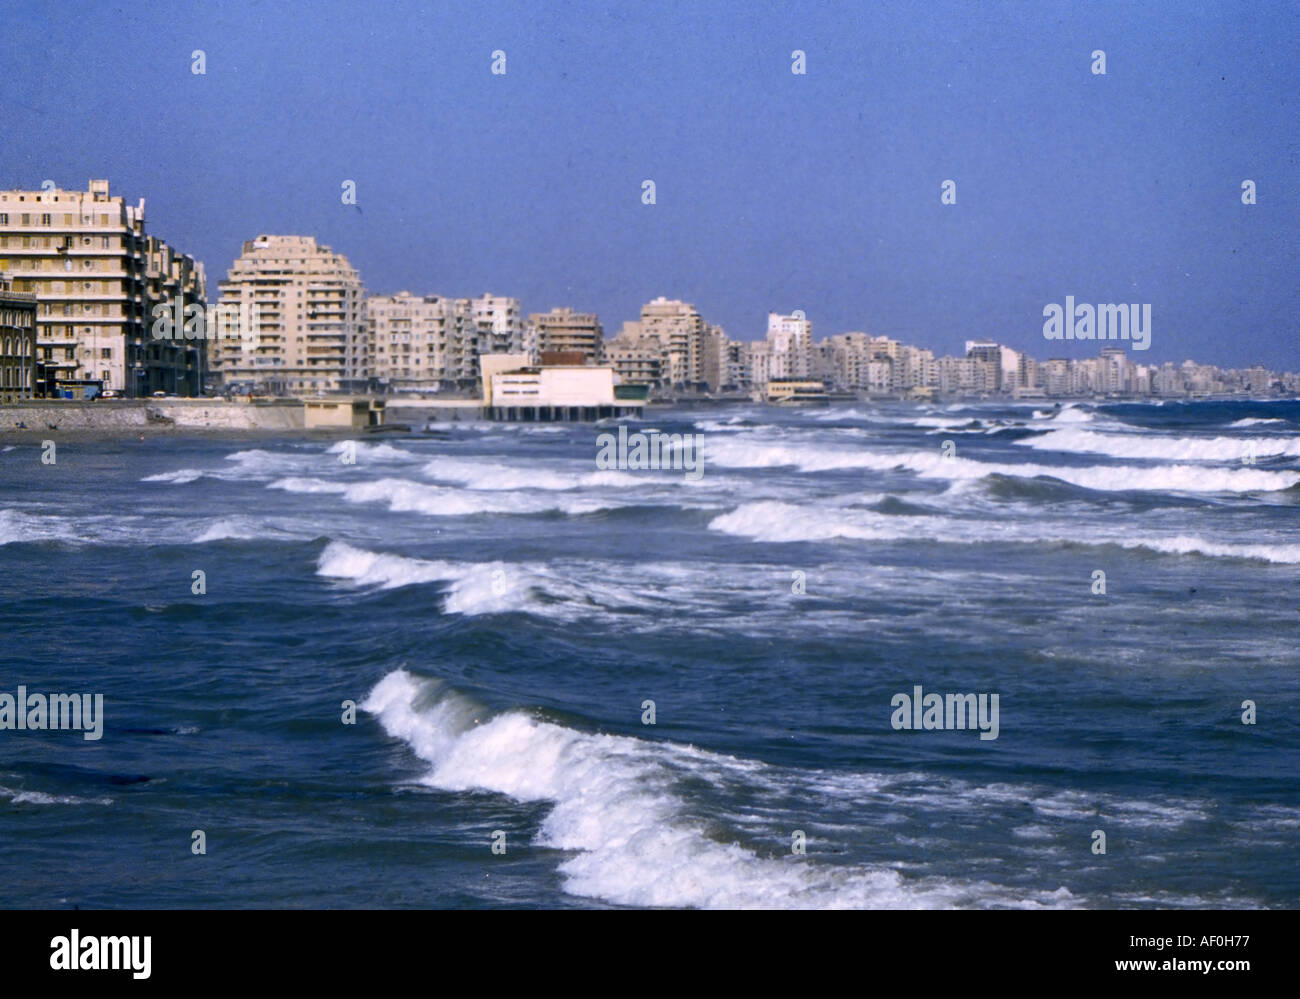 Alexandria, Egypt waterfront Stock Photo